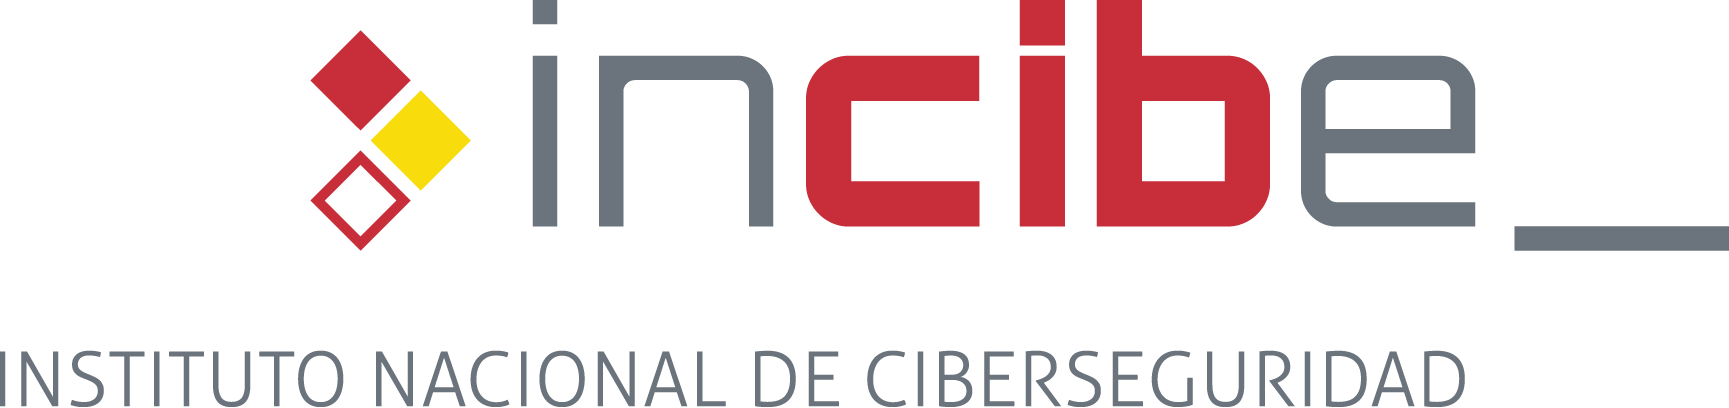 Instituto Nacional de Ciberseguridad (INCIBE)